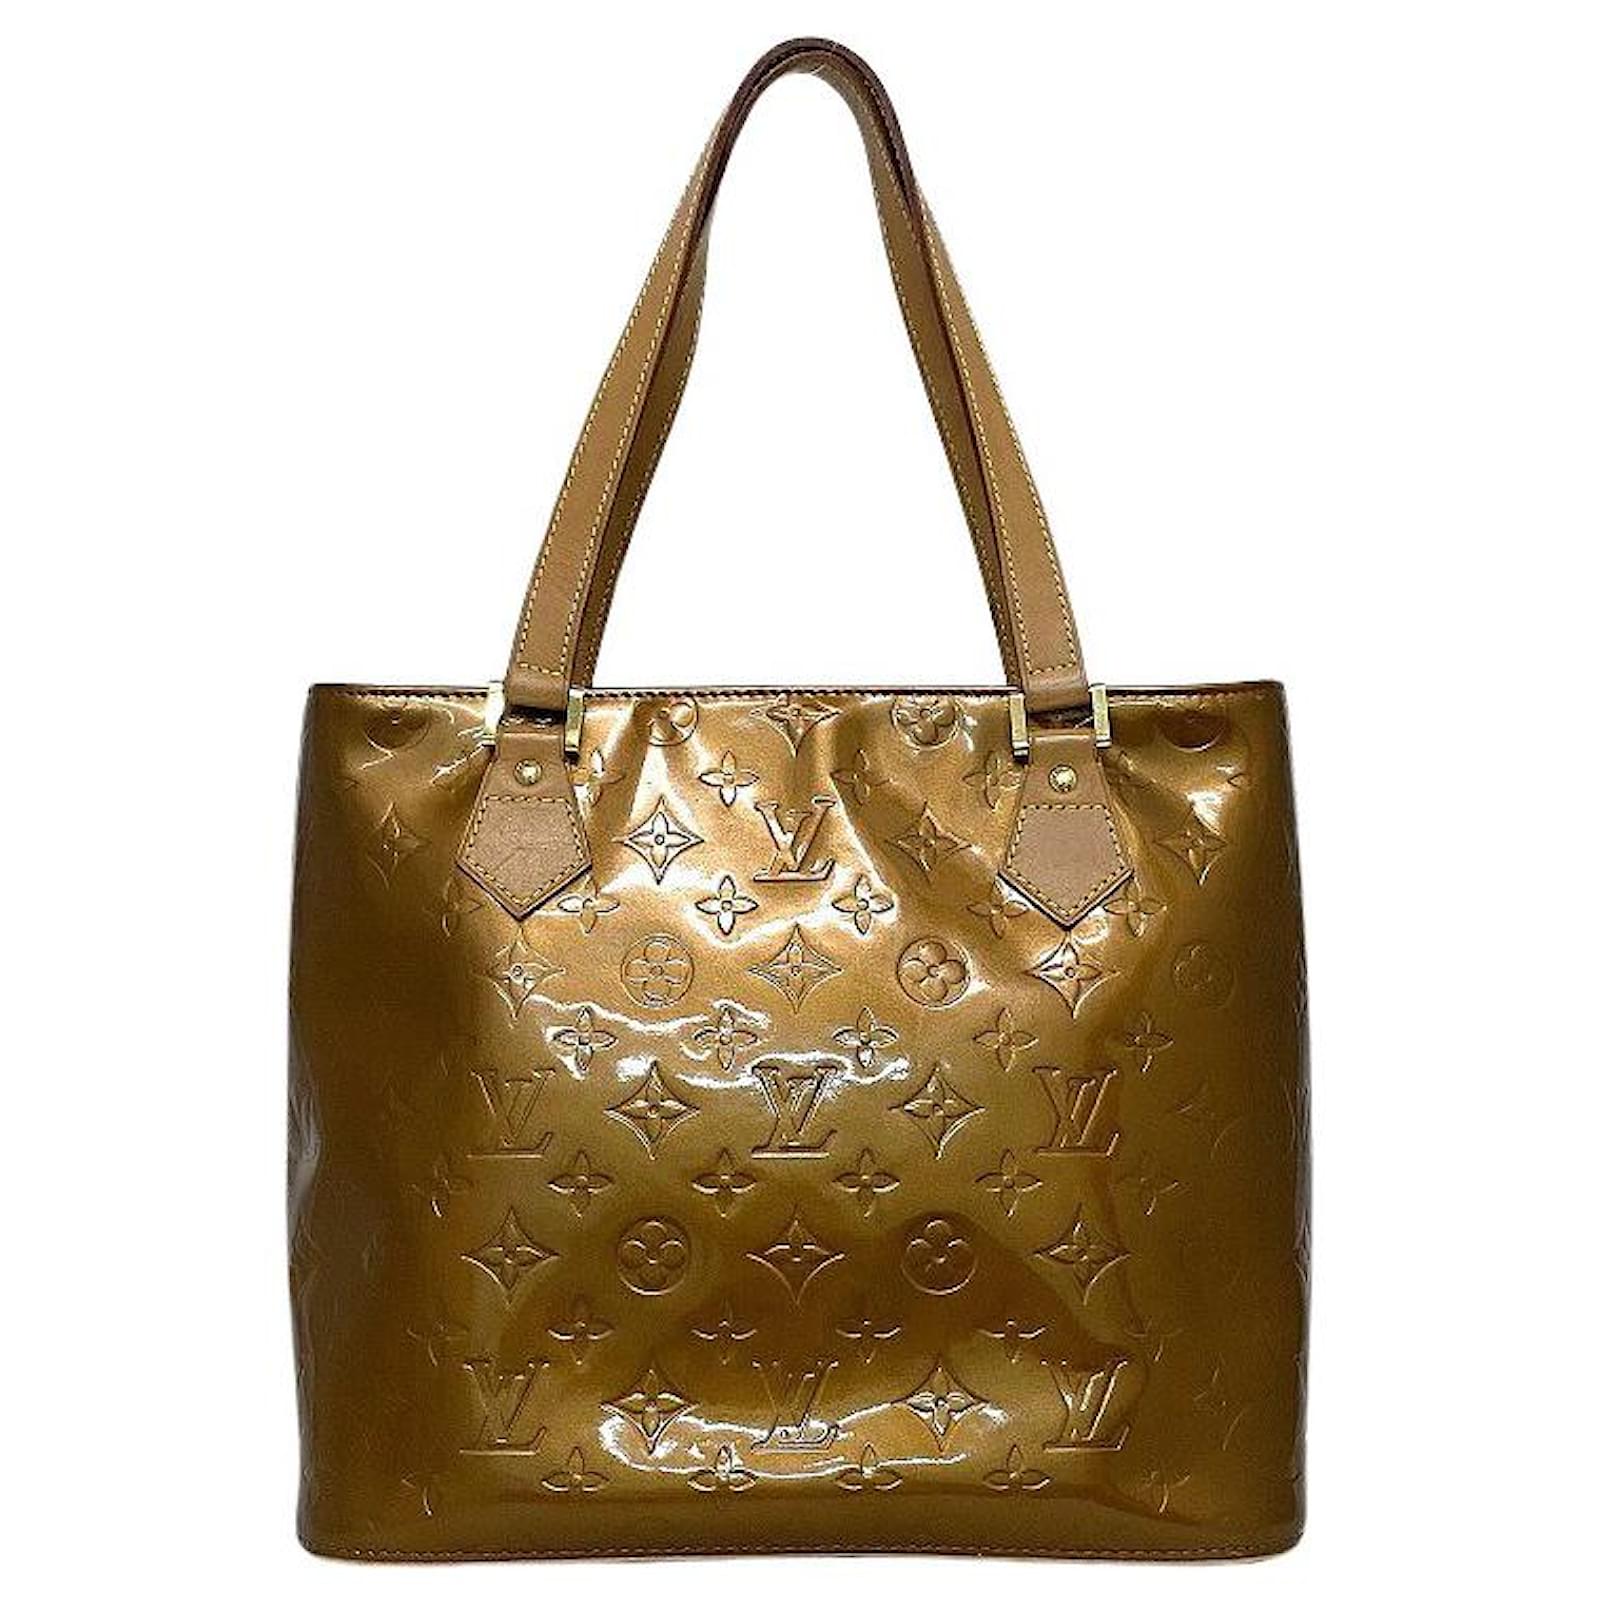 Louis Vuitton Camel Colored Bag